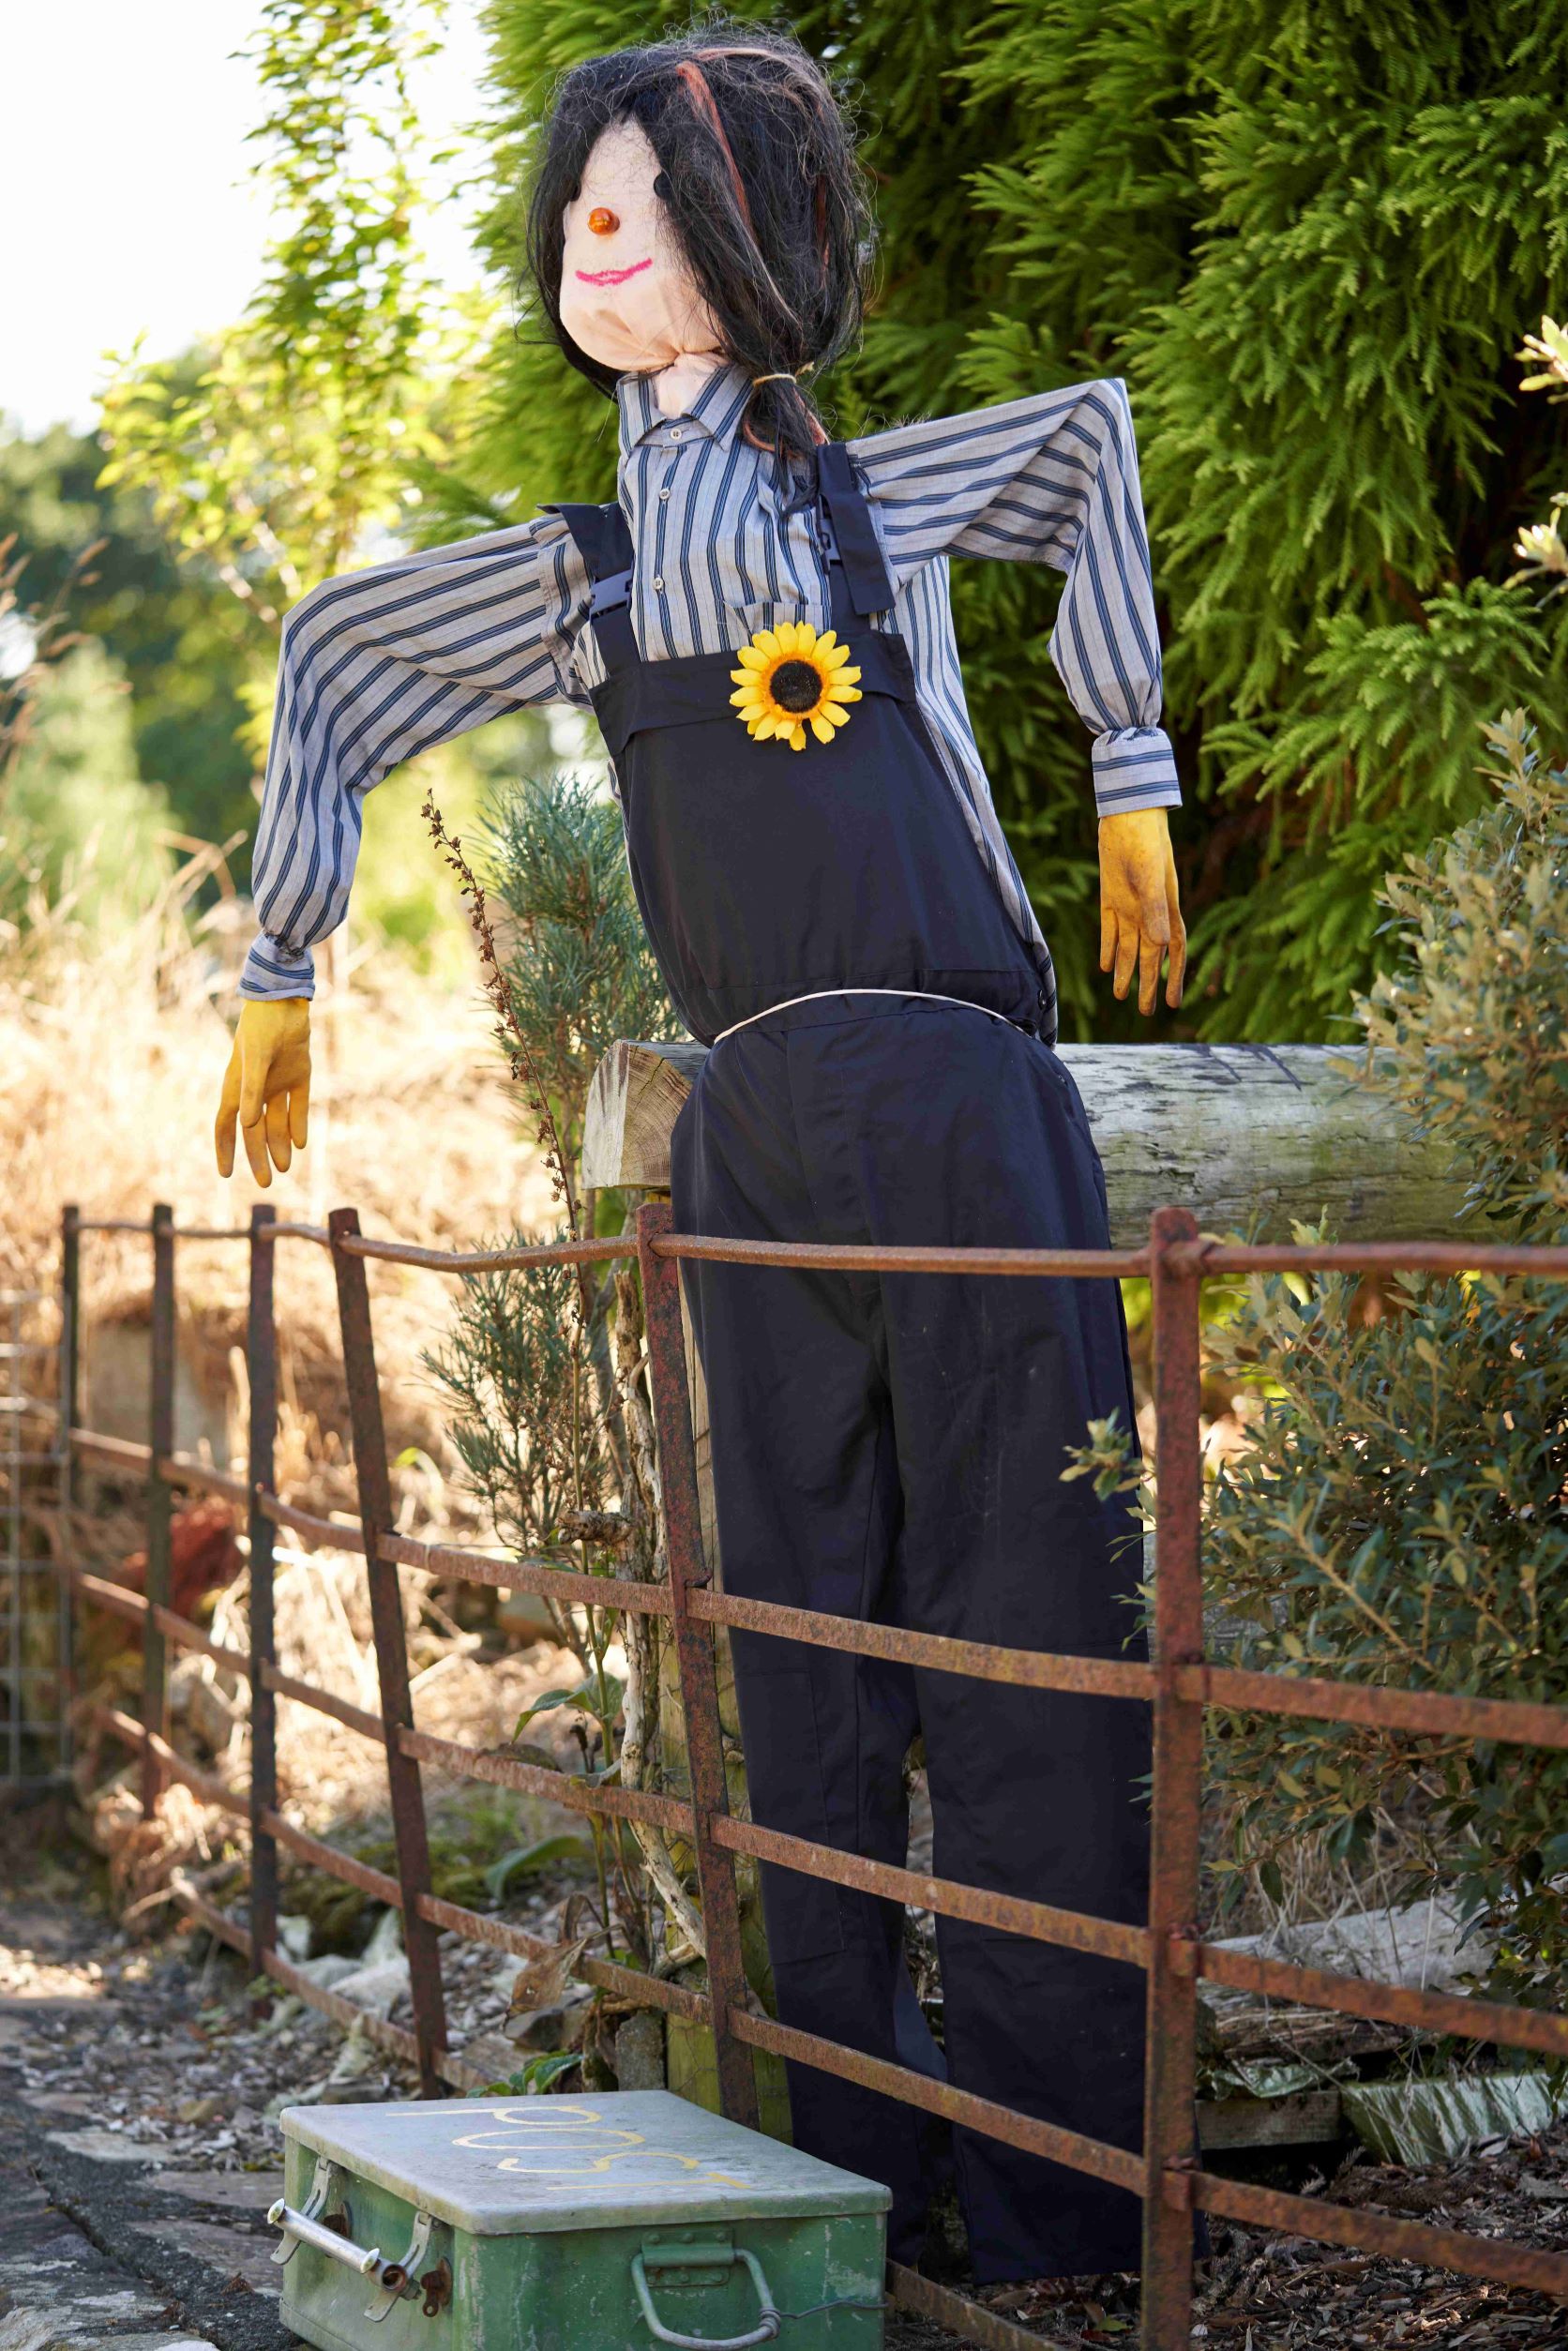 A young girl scarecrow